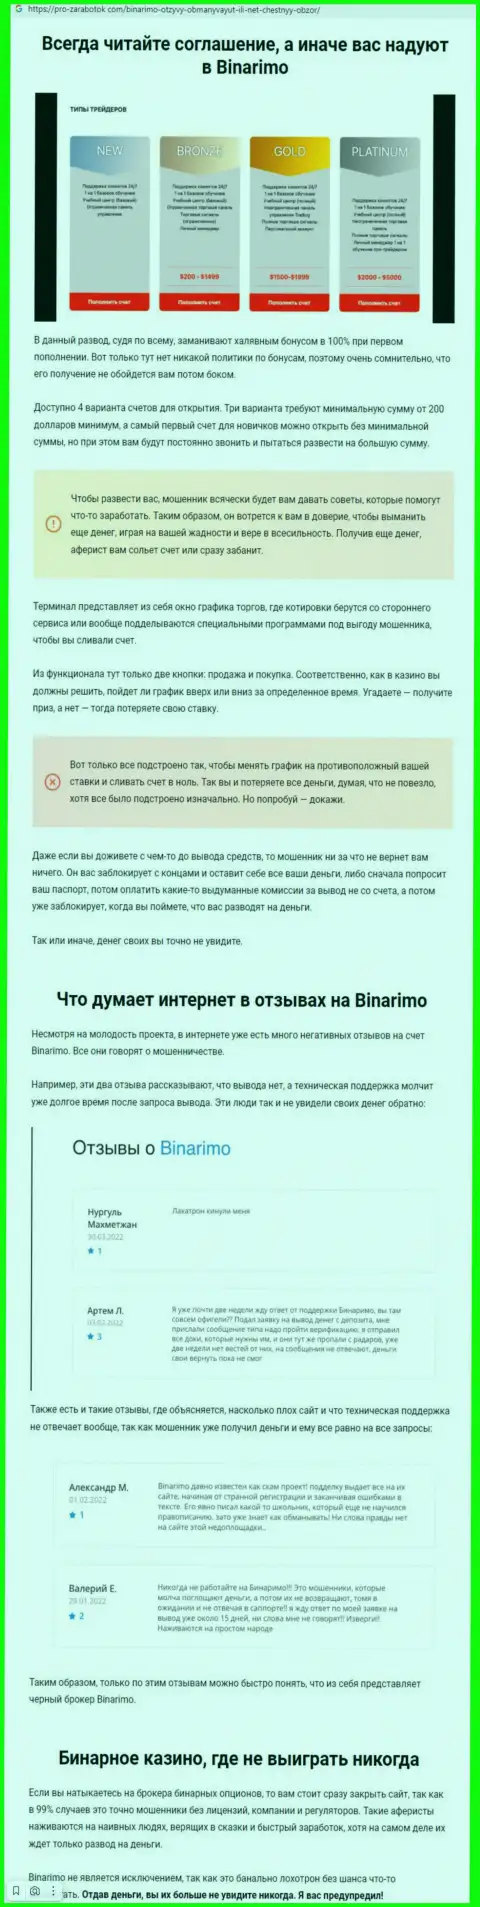 Binarimo - это мошенники, которым денежные средства перечислять не стоит ни под каким предлогом (обзор)